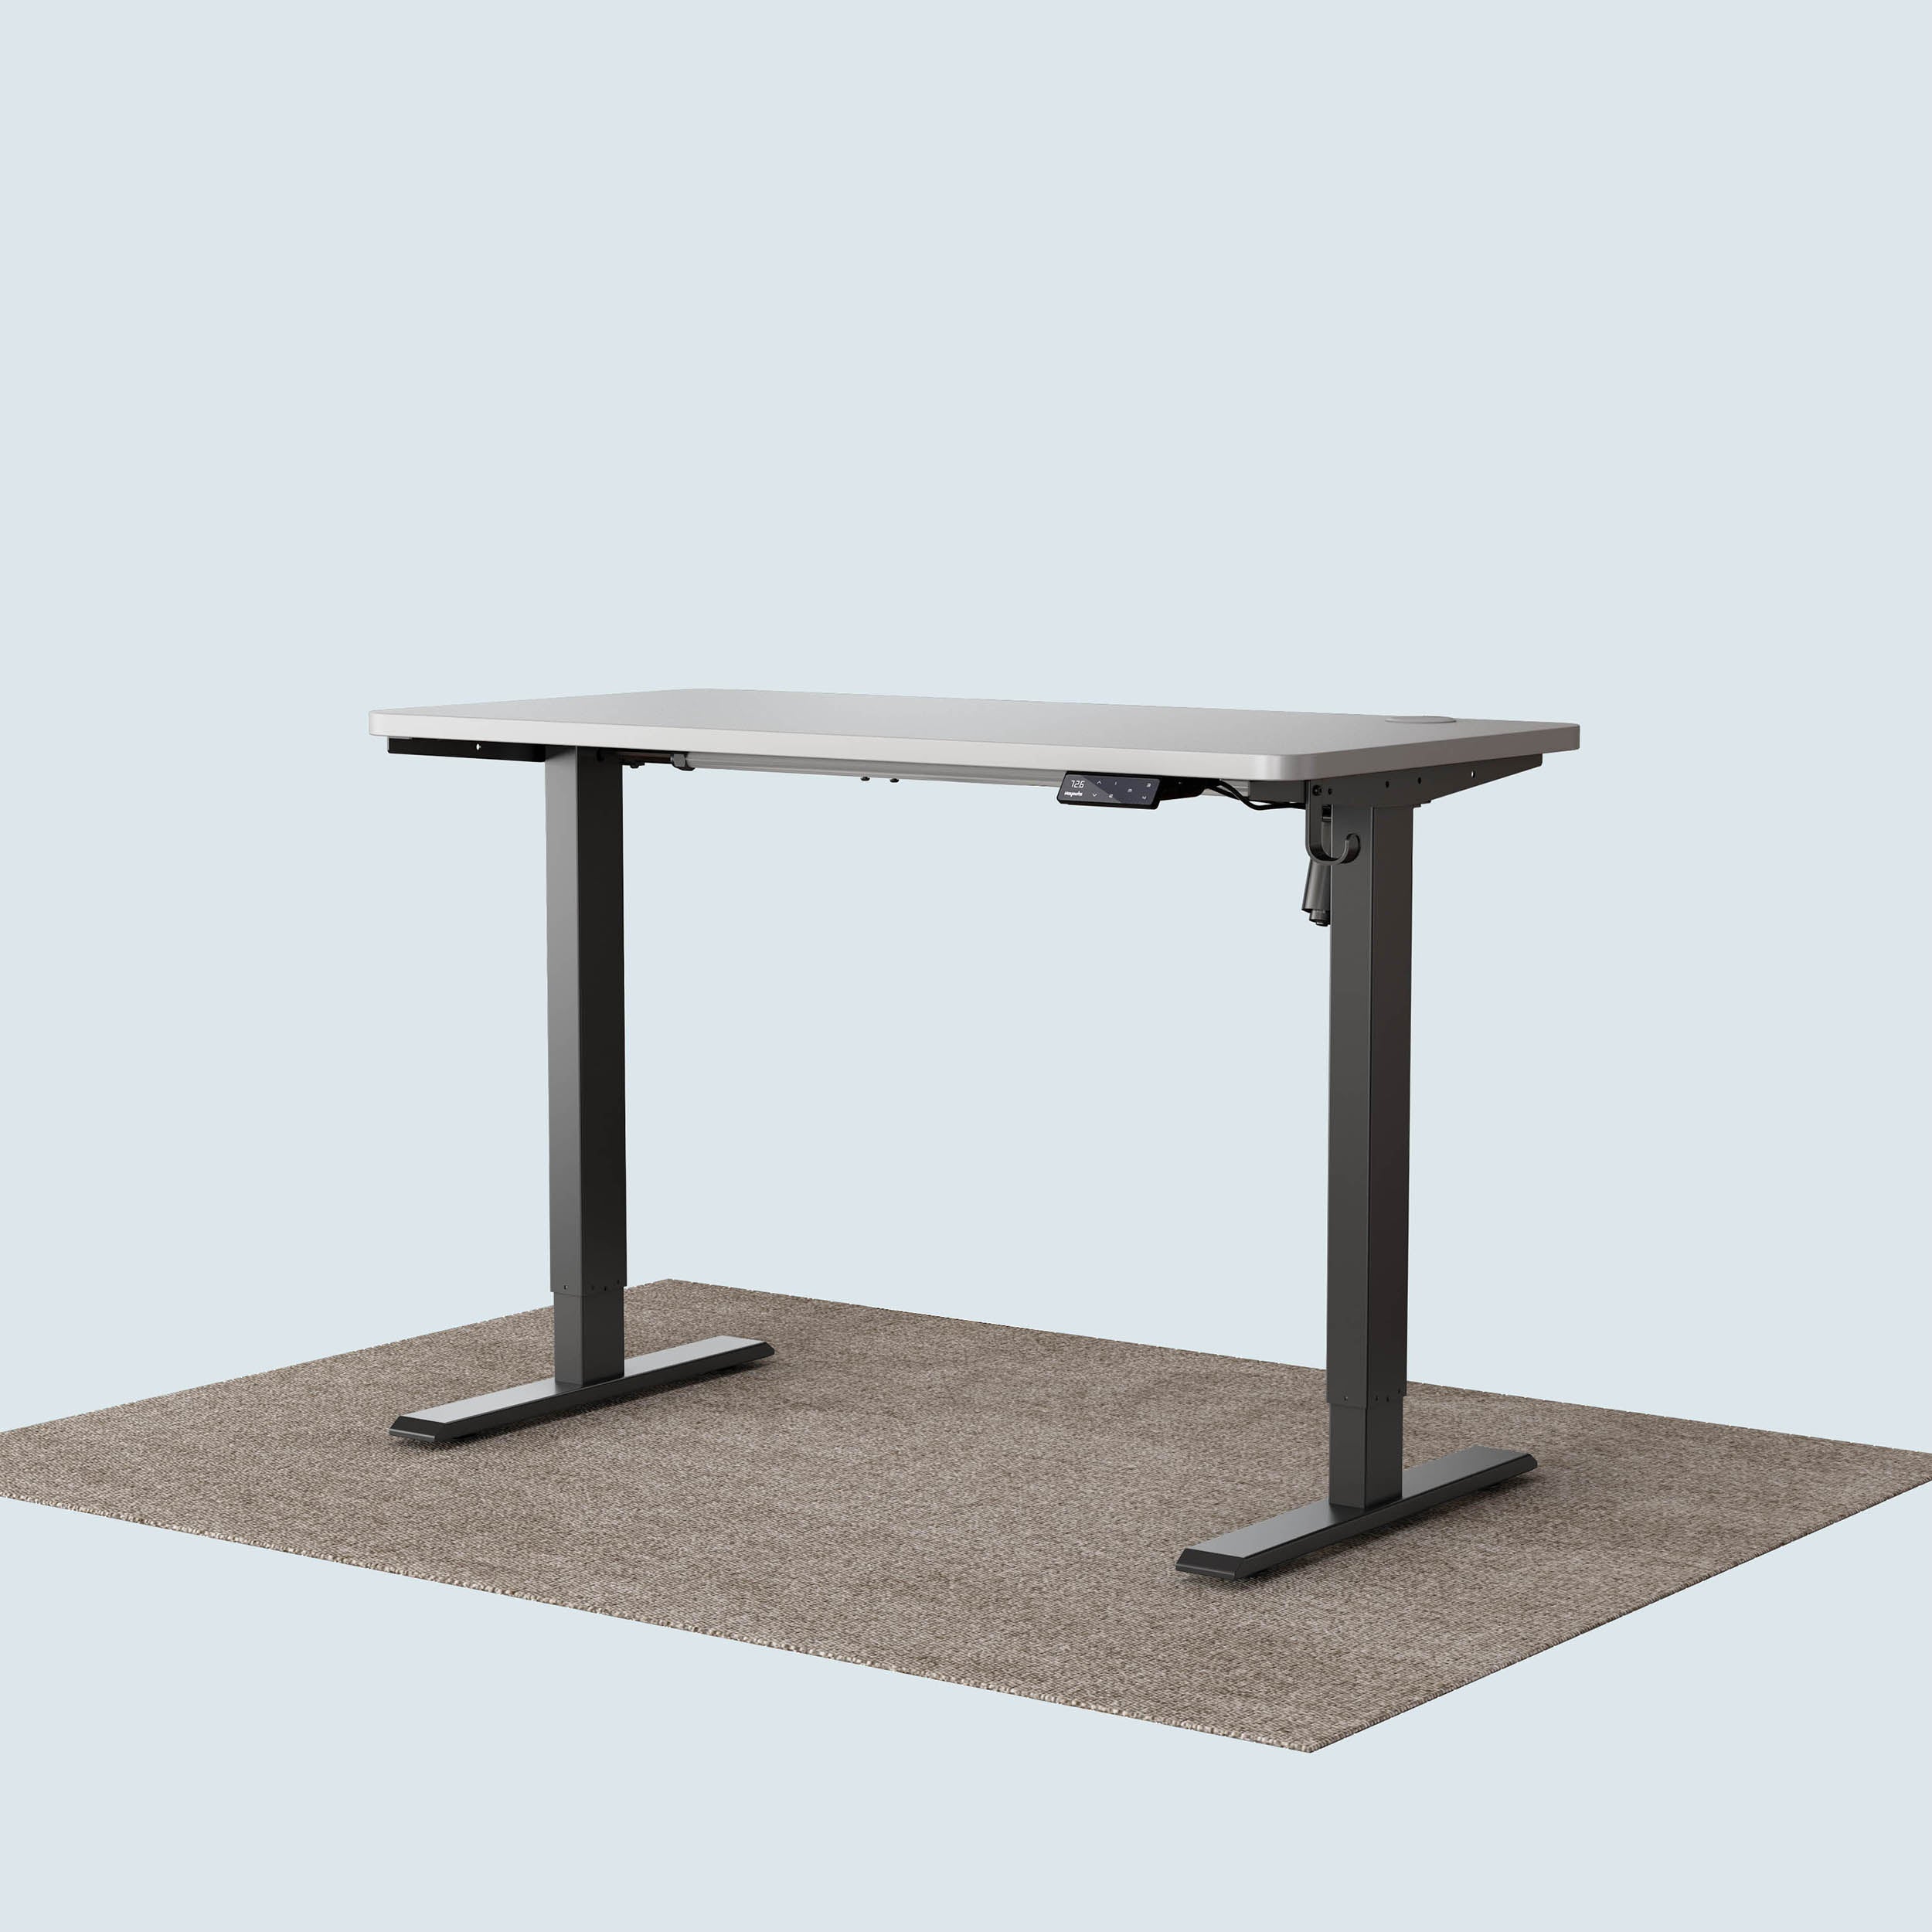 Maidesite T1 Basic standing desk black frame and 120x60cm white desktop